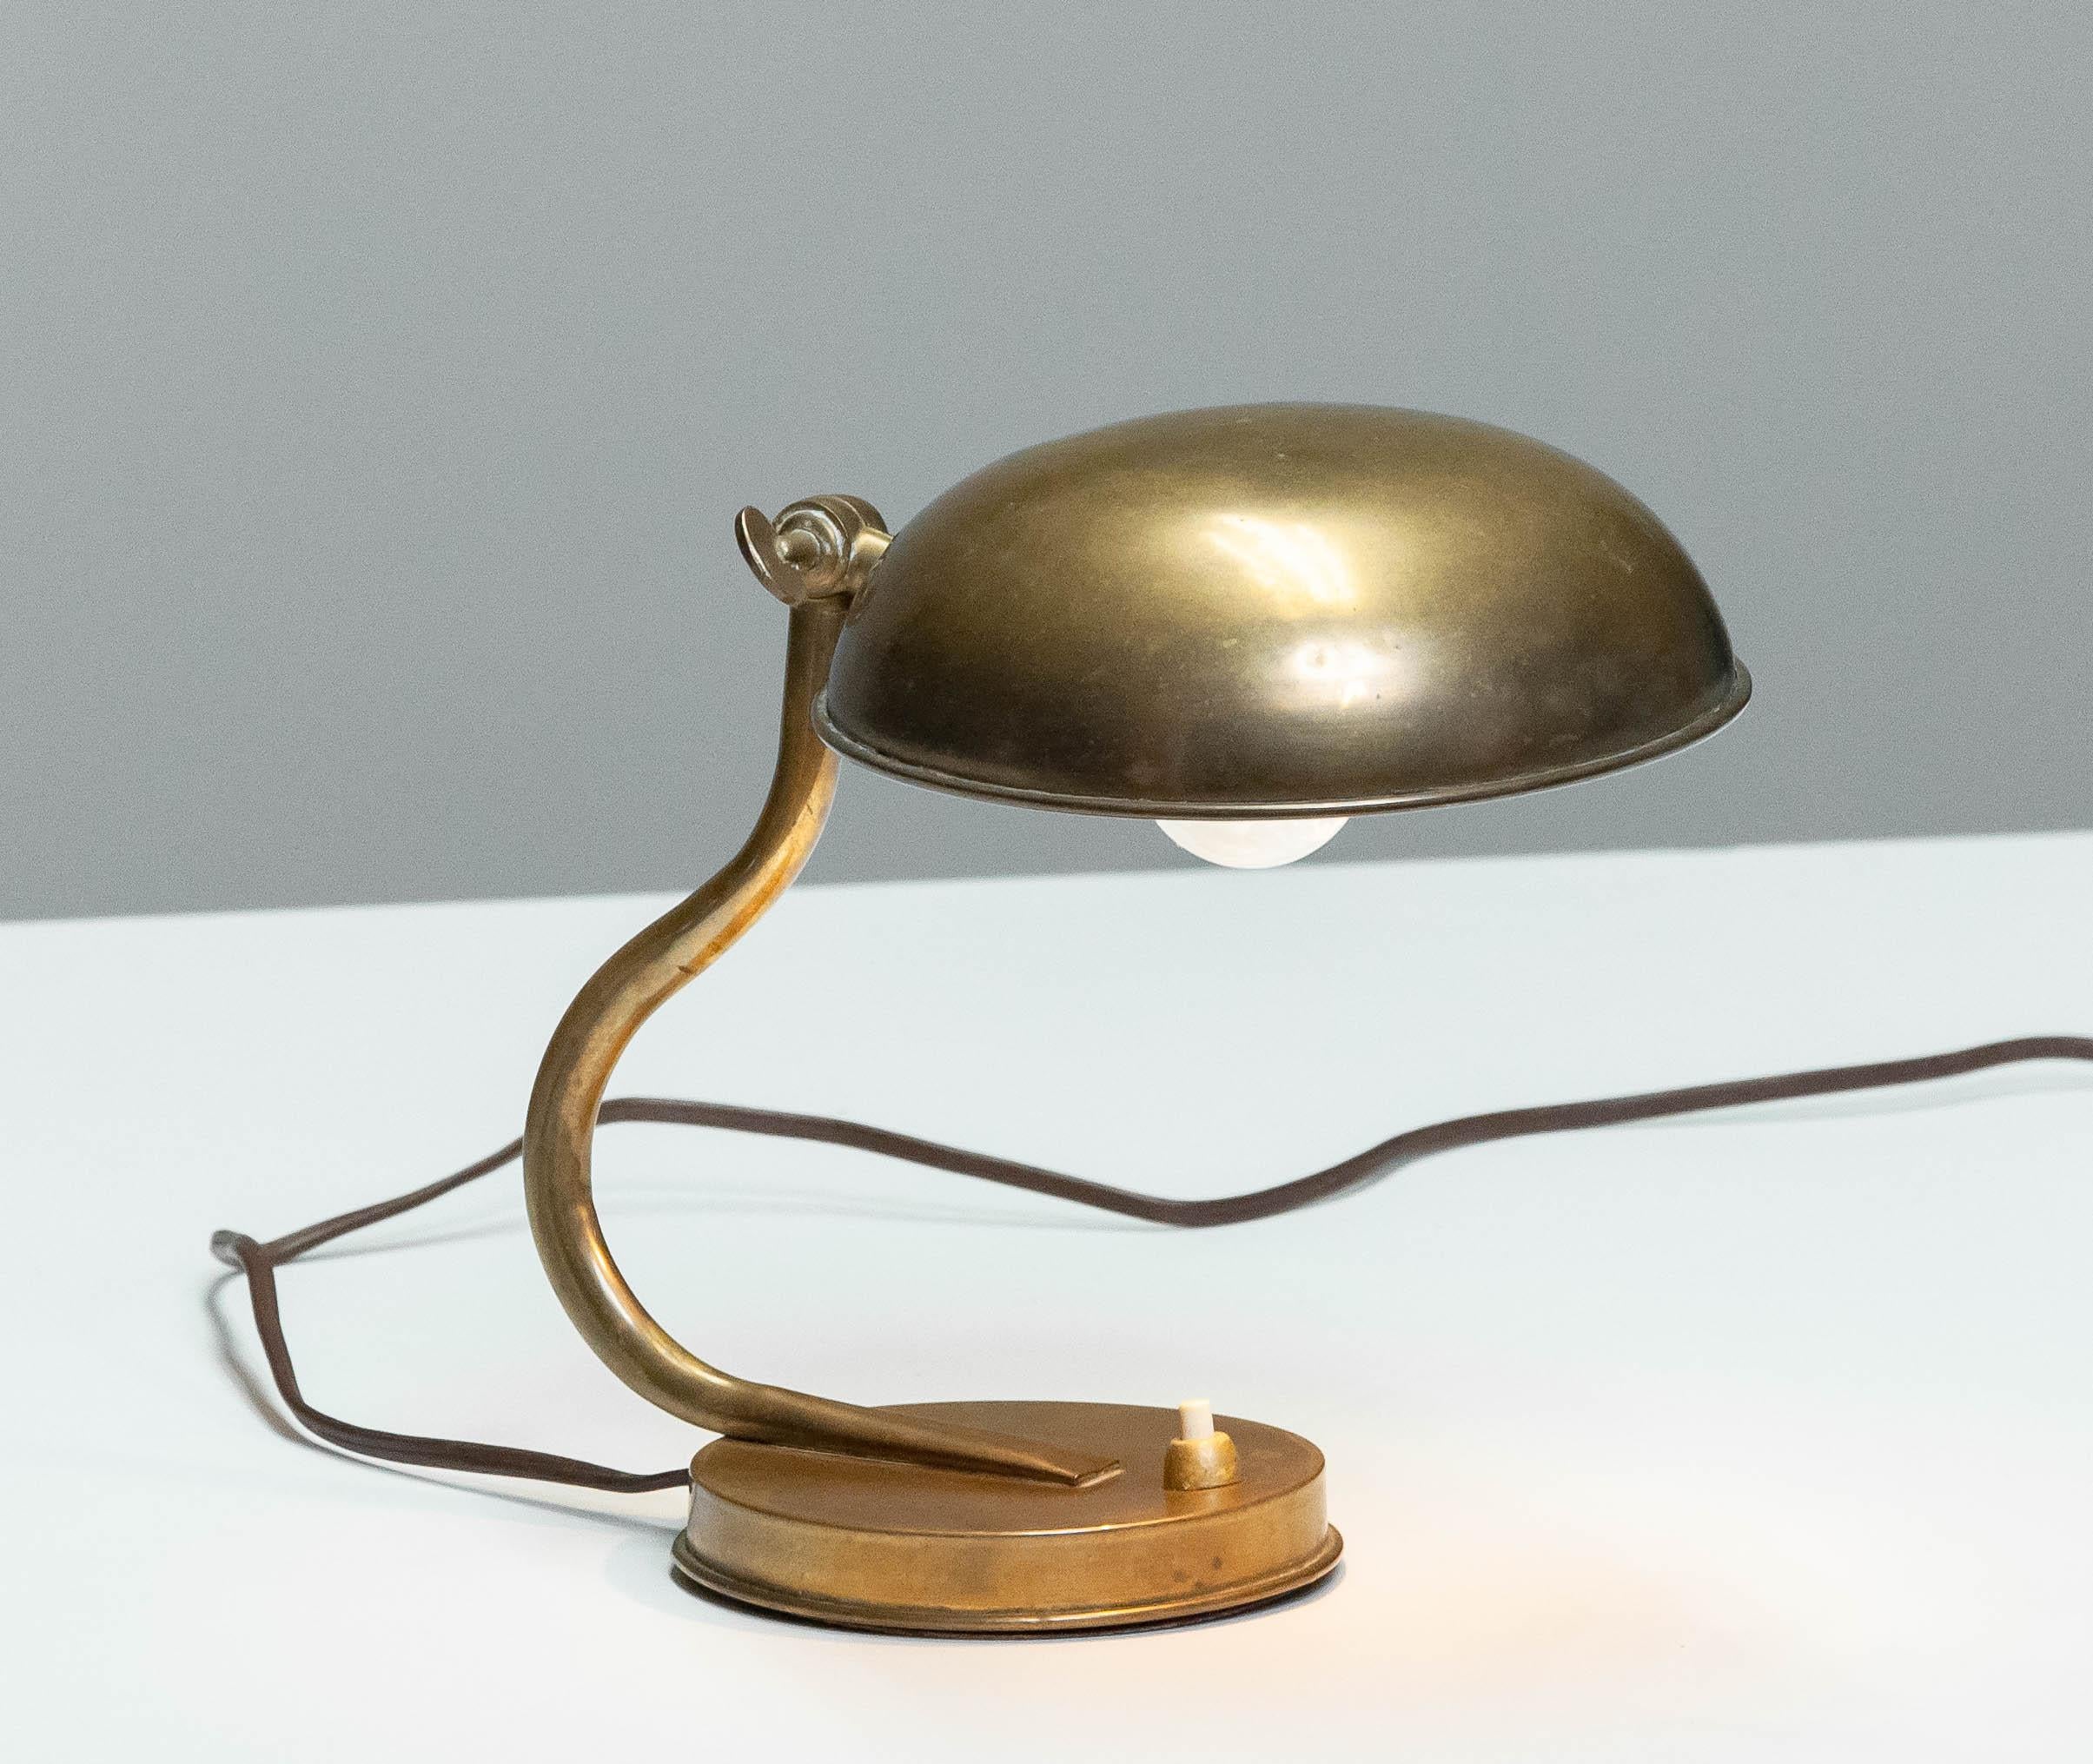 Belle et jolie petite lampe de table / bureau des années 1940 en laiton fabriquée par ASEA en Suède et attribuée au designer Hans Bergström.
Cette lampe de table est en bon état et techniquement à 100%. Convient aux zones 110 et 230.
Un raccord à